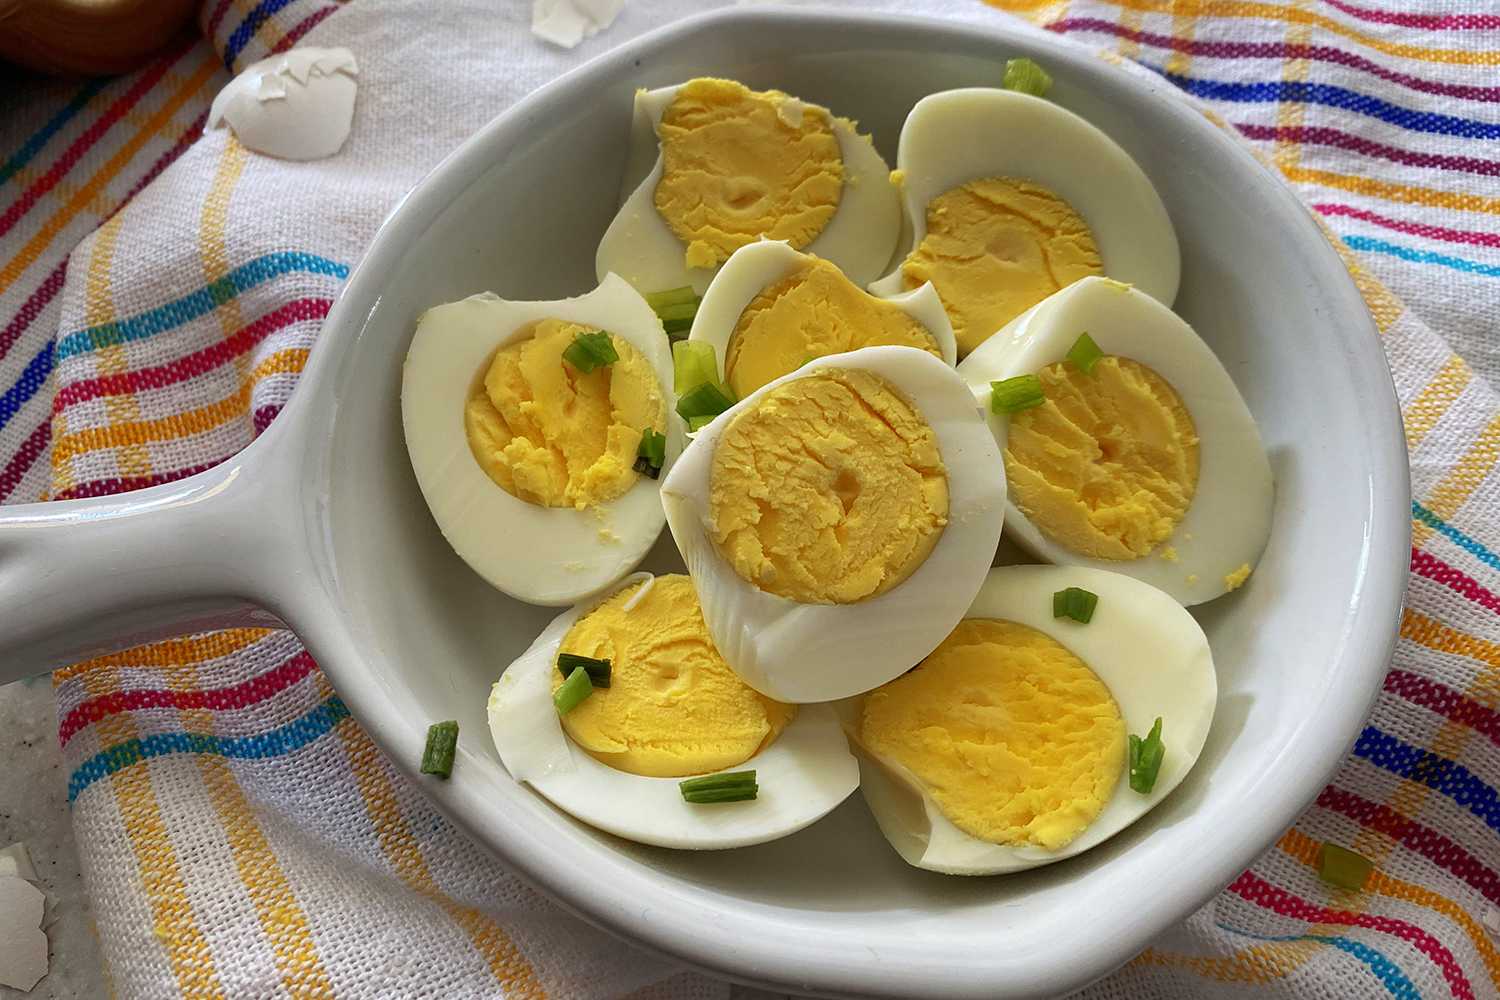 https://www.corriecooks.com/wp-content/uploads/2020/06/Instant-Pot-Hard-Boiled-Eggs-1.jpg